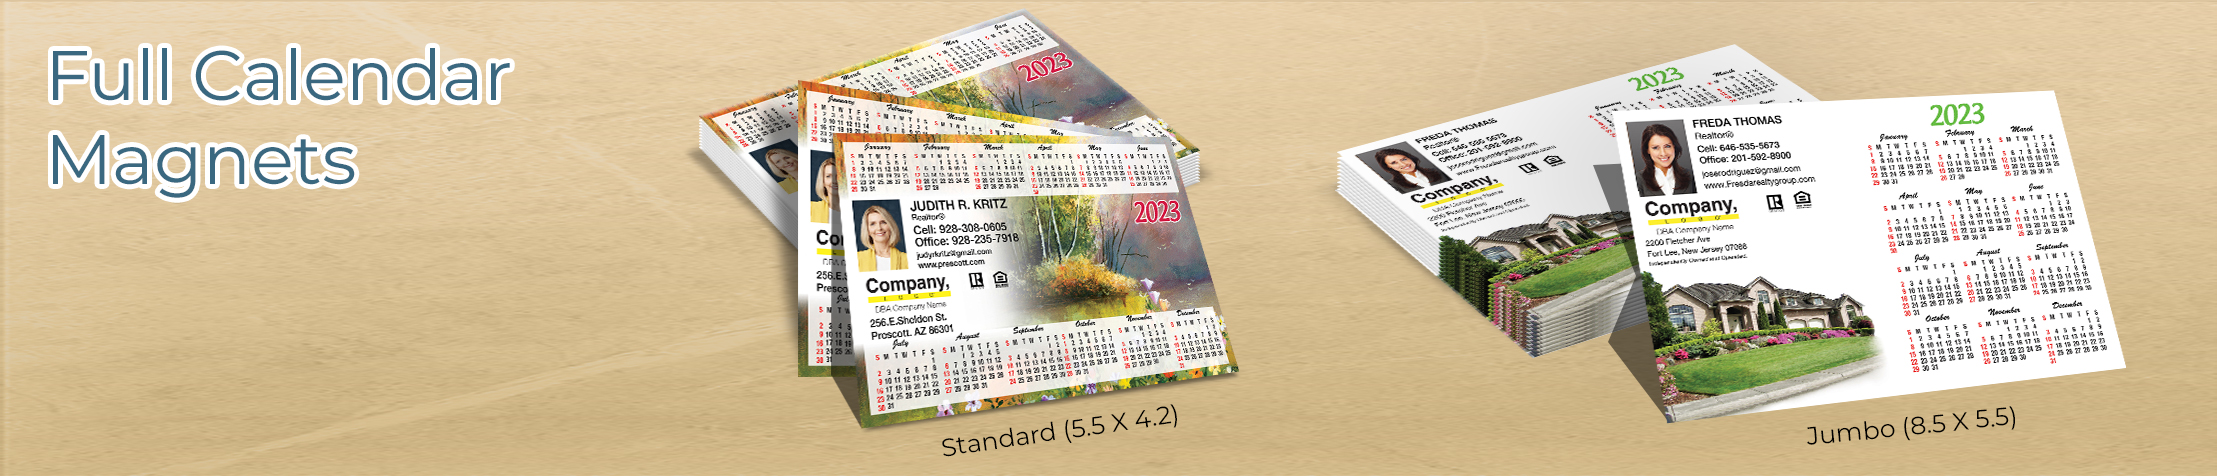 Weichert Real Estate Full Calendar Magnets - Weichert 2019 calendars in Standard or Jumbo Size | BestPrintBuy.com